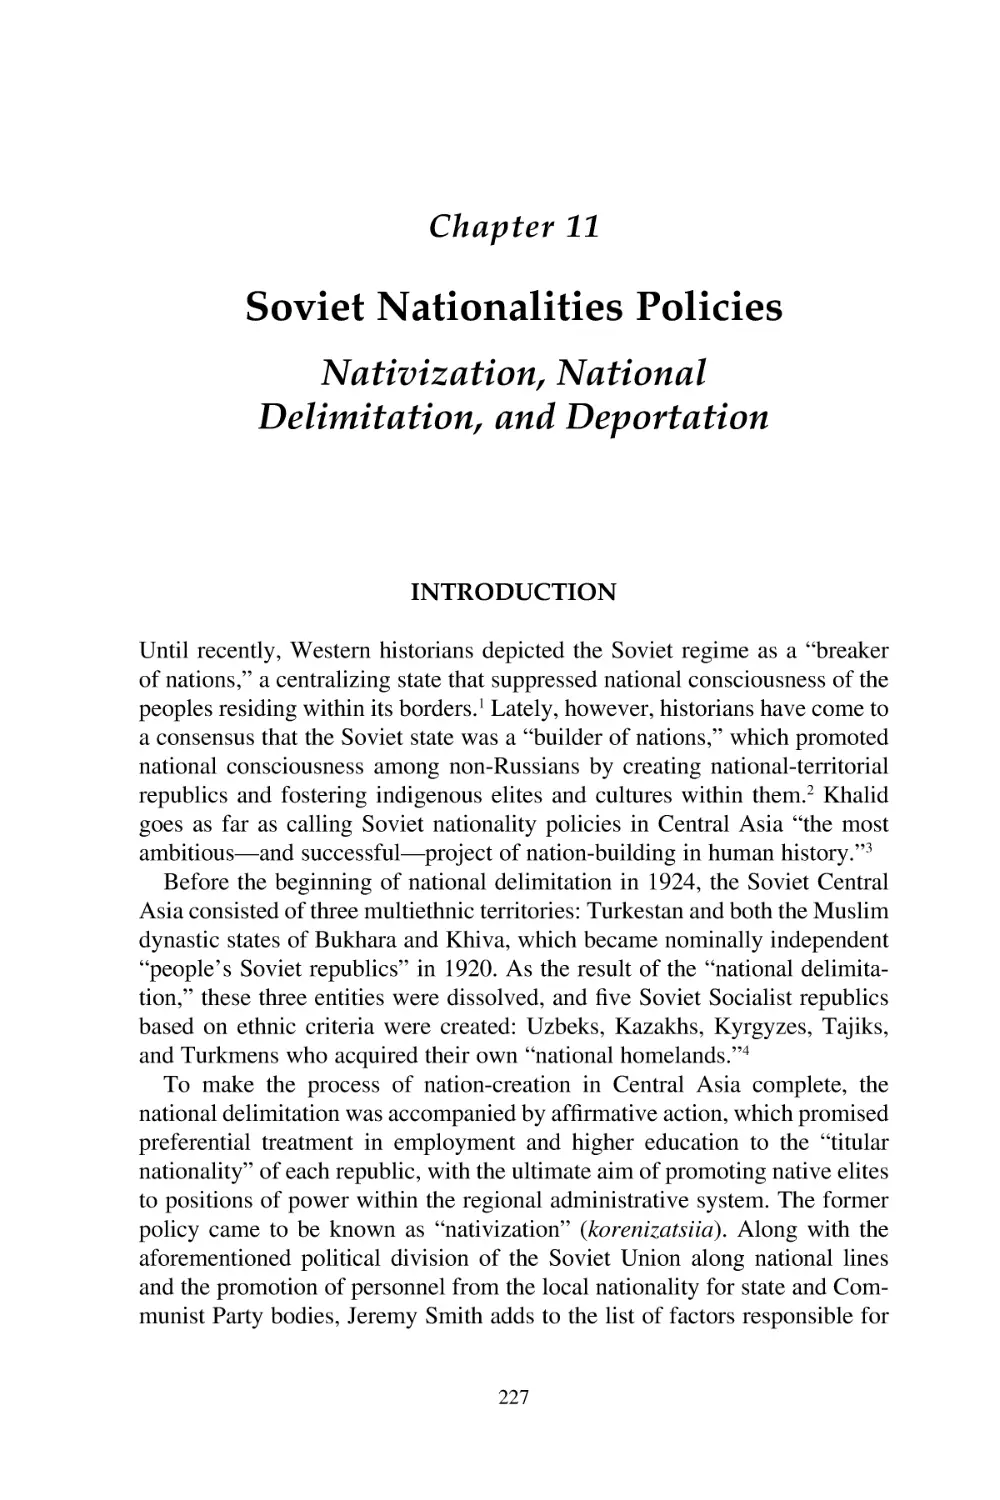 11. Soviet Nationalities Policies